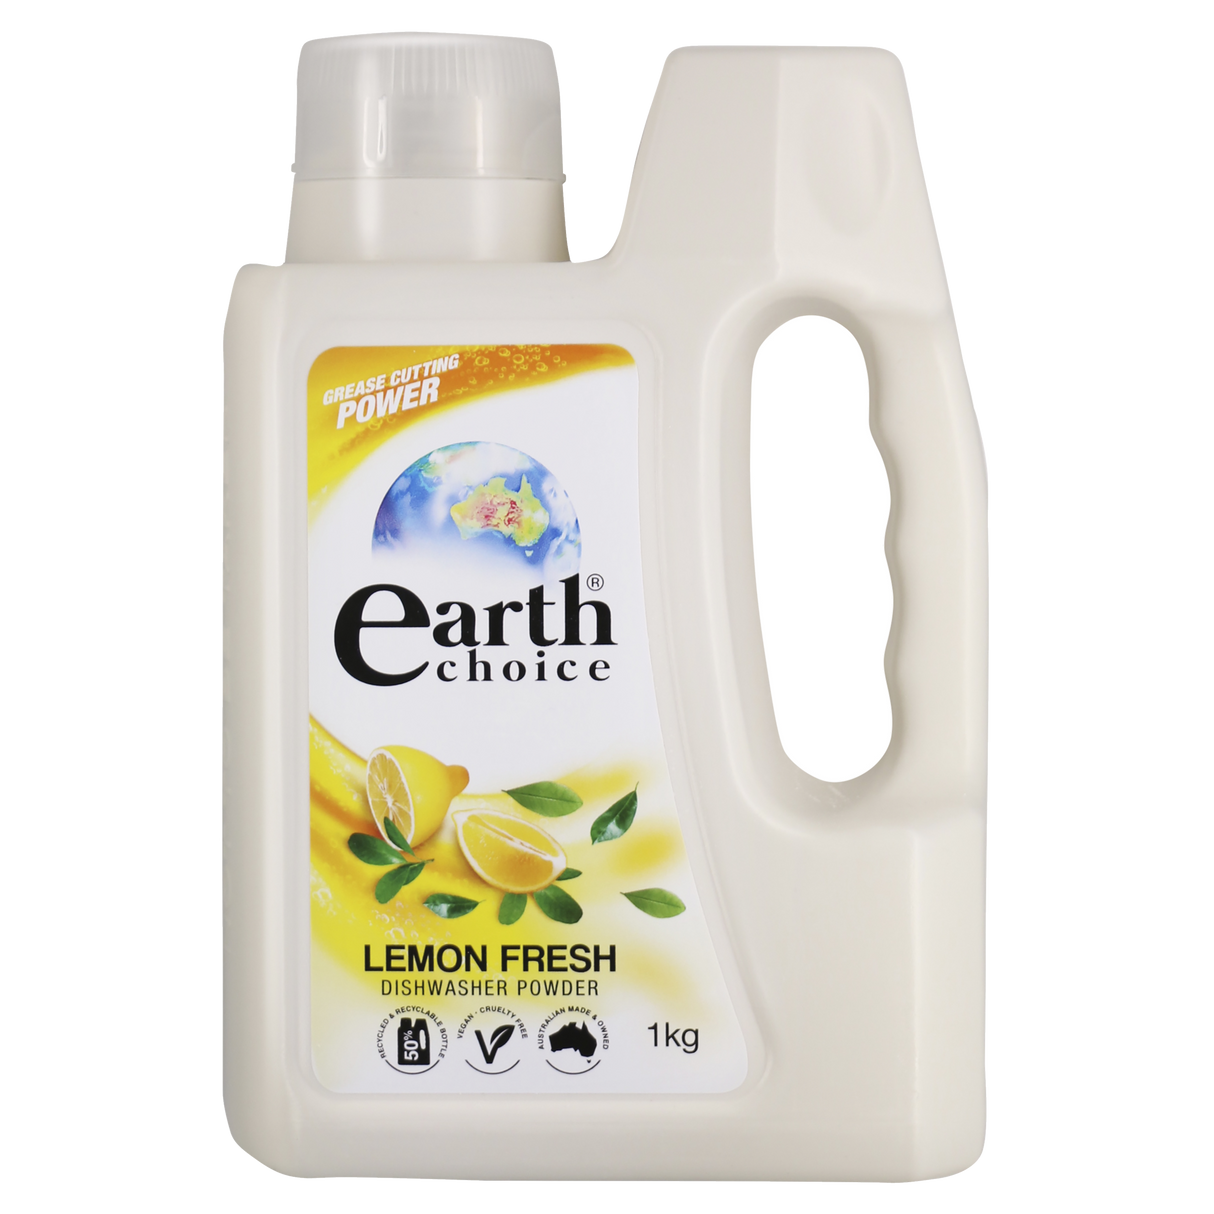 Earth Choice Dishwasher Powder Lemon Fresh 1kg